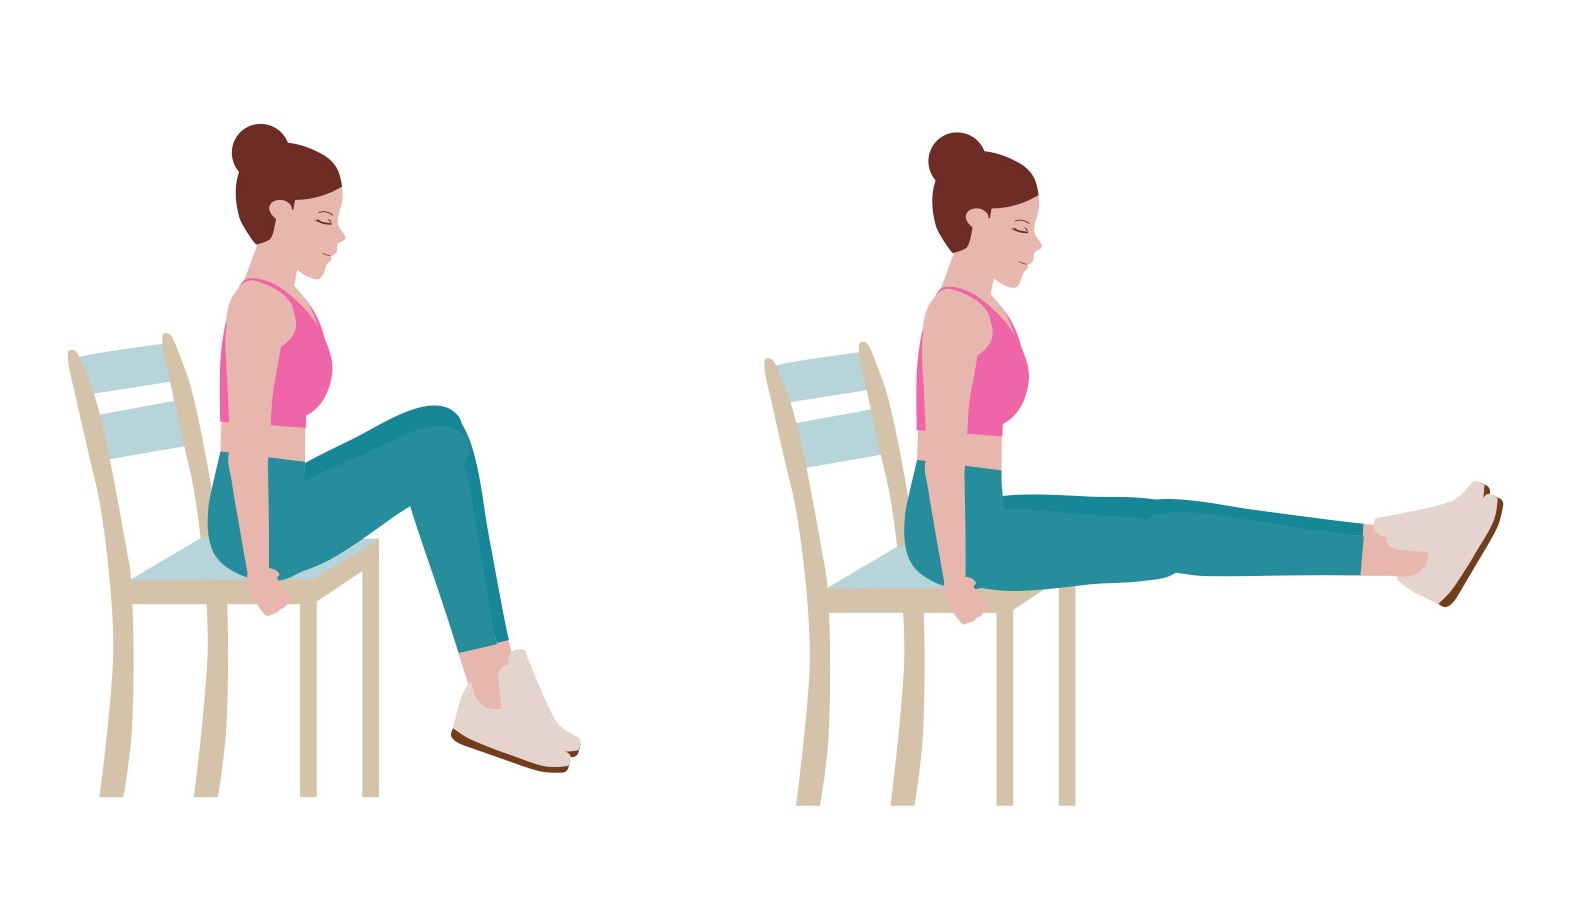 5 bài tập giảm cân cho nàng văn phòng hay ngồi nhiều, giúp eo thon nhỏ - Ảnh 4.